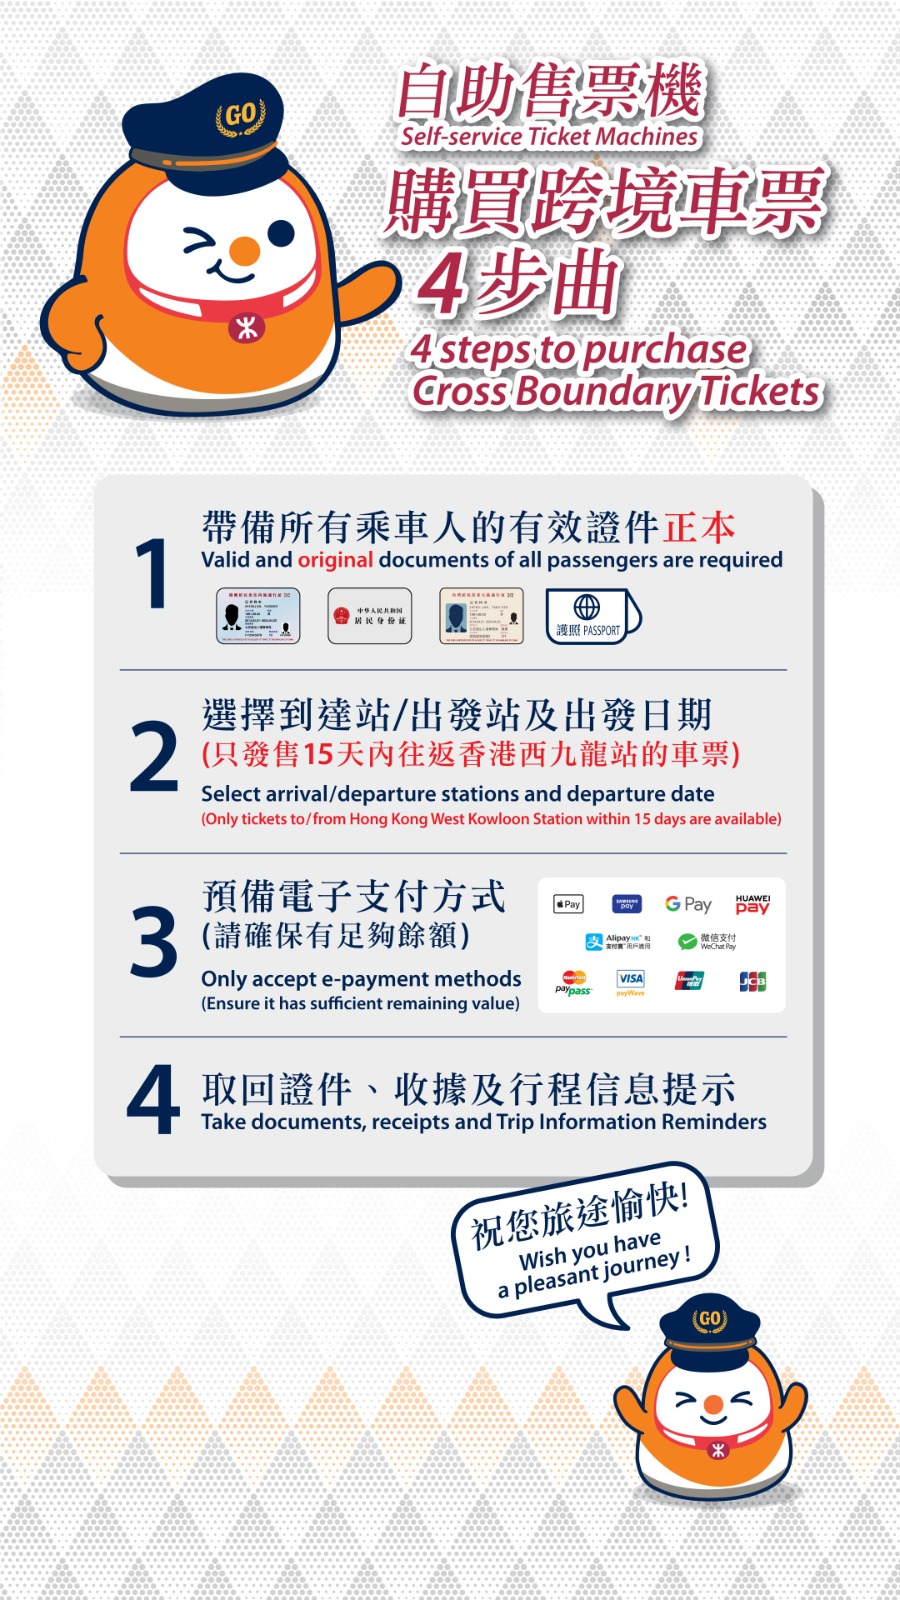 港铁将包括加派人手及开放所有香港票务柜位协助乘客购票。